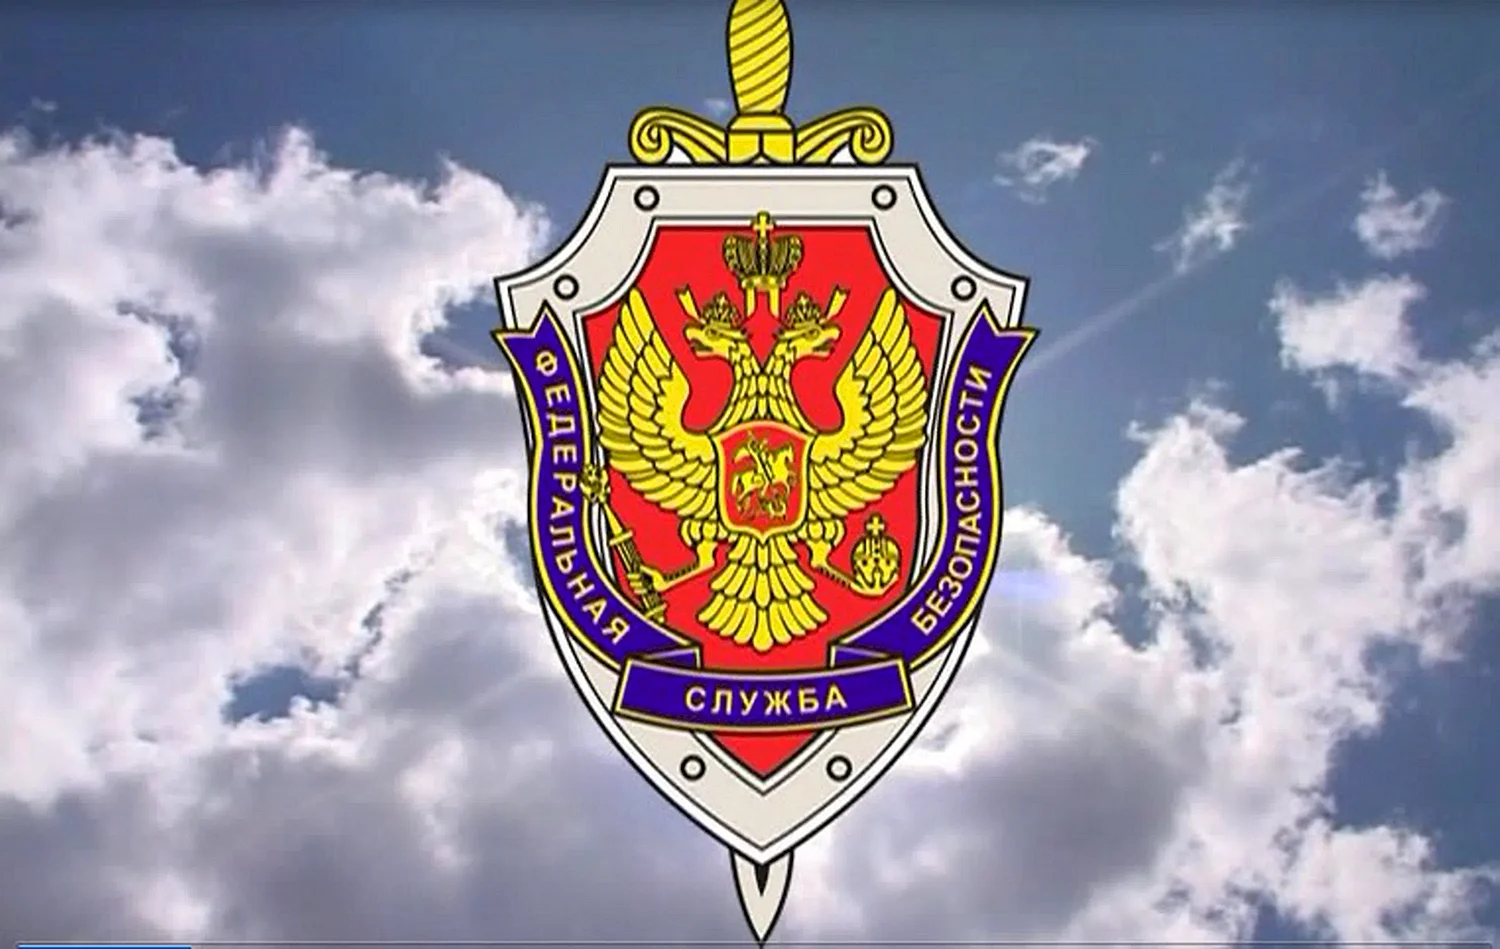 Эмблема УФСБ России